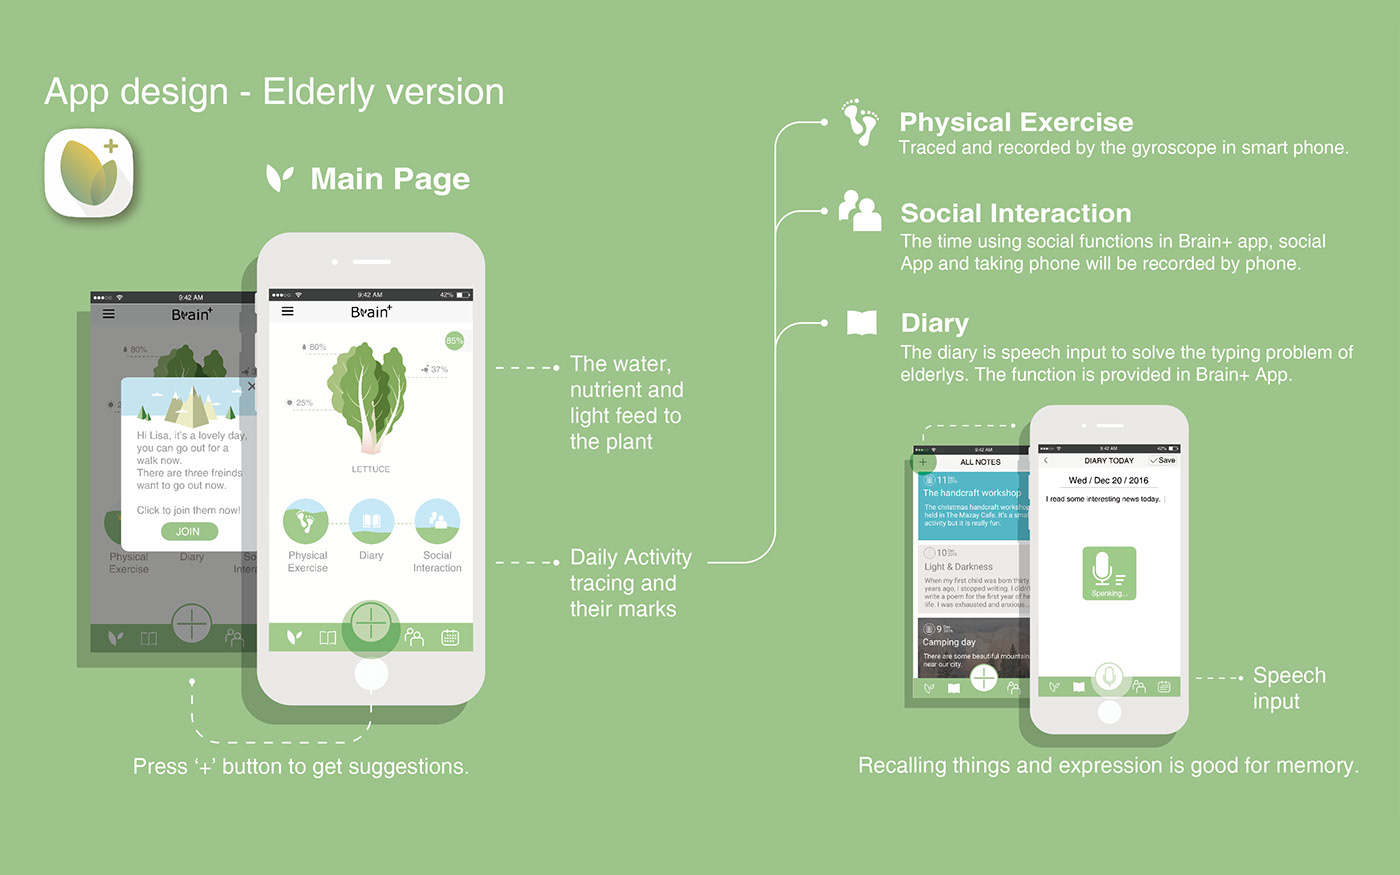 Design for elderly user-centered research